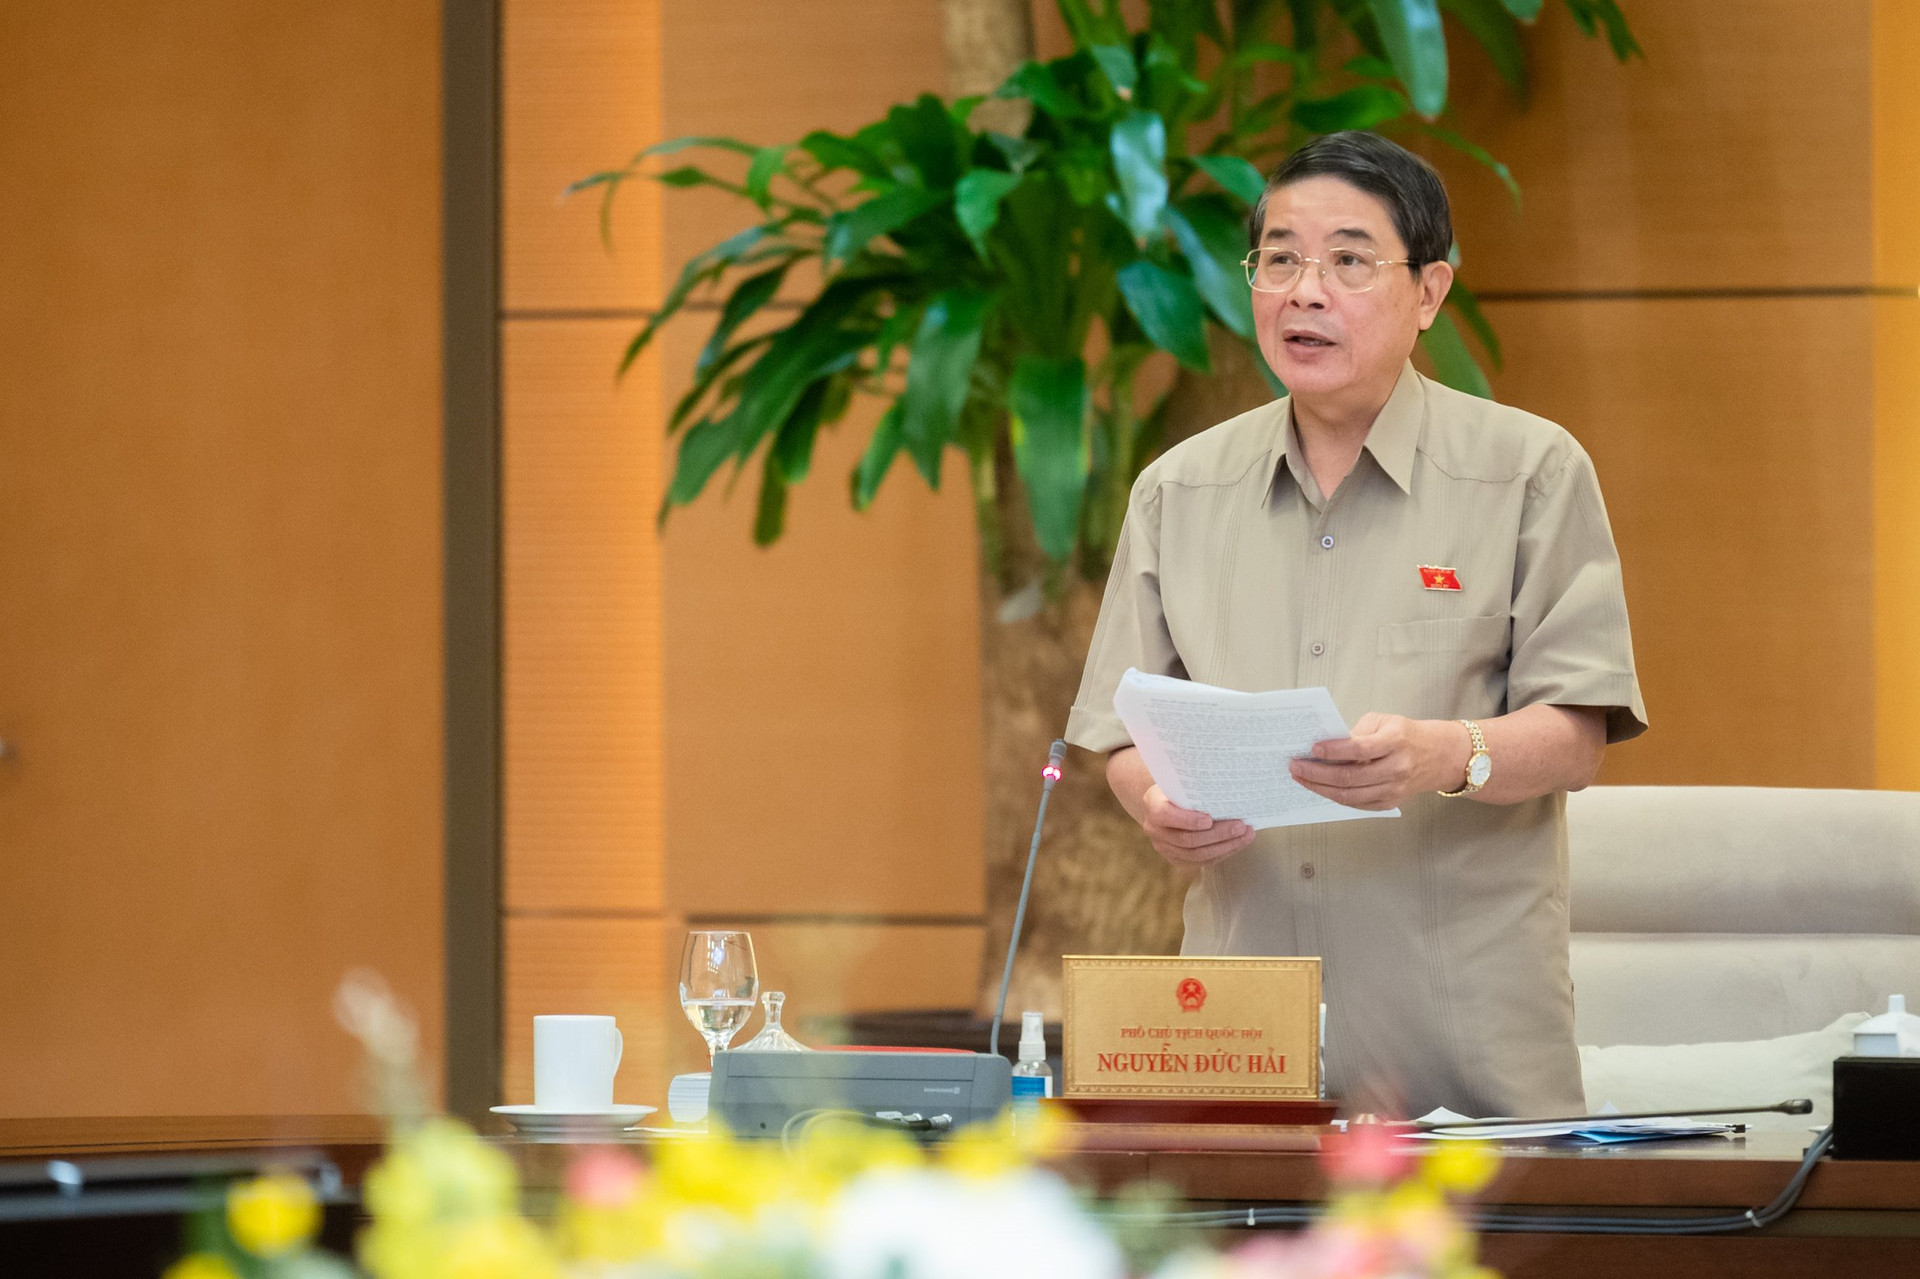 Phó Chủ tịch Nguyễn Đức Hải cho rằng, các cơ chế trong dự thảo Luật Thủ đô (sửa đổi) chưa đủ mạnh